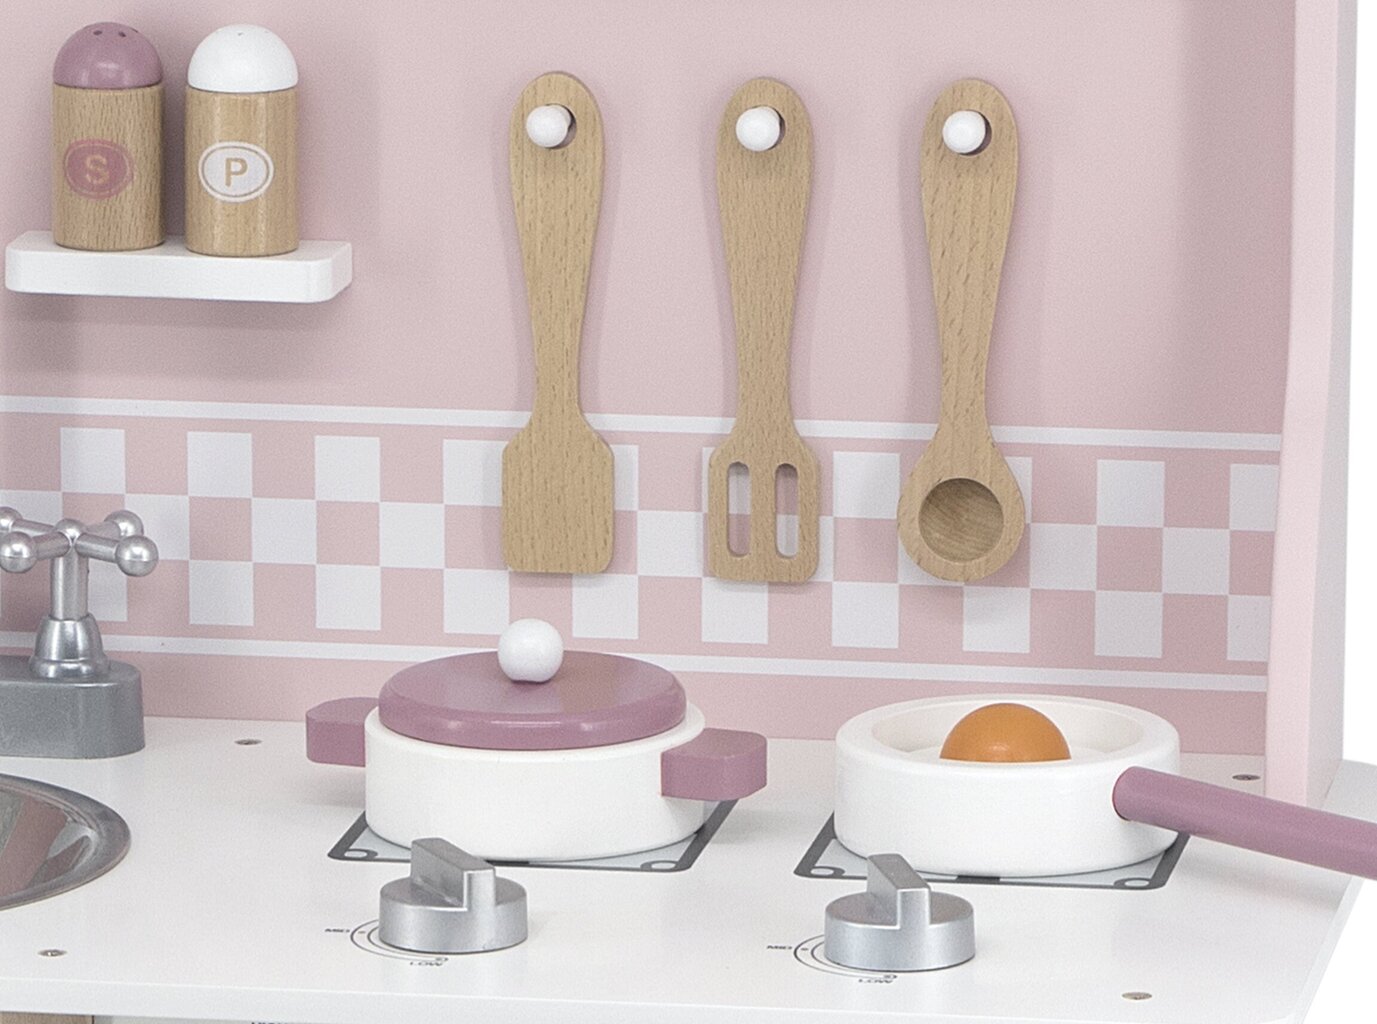 VIGA PolarB puidust köök hõbedase - roosa aksessuaaridega цена и информация | Tüdrukute mänguasjad | kaup24.ee